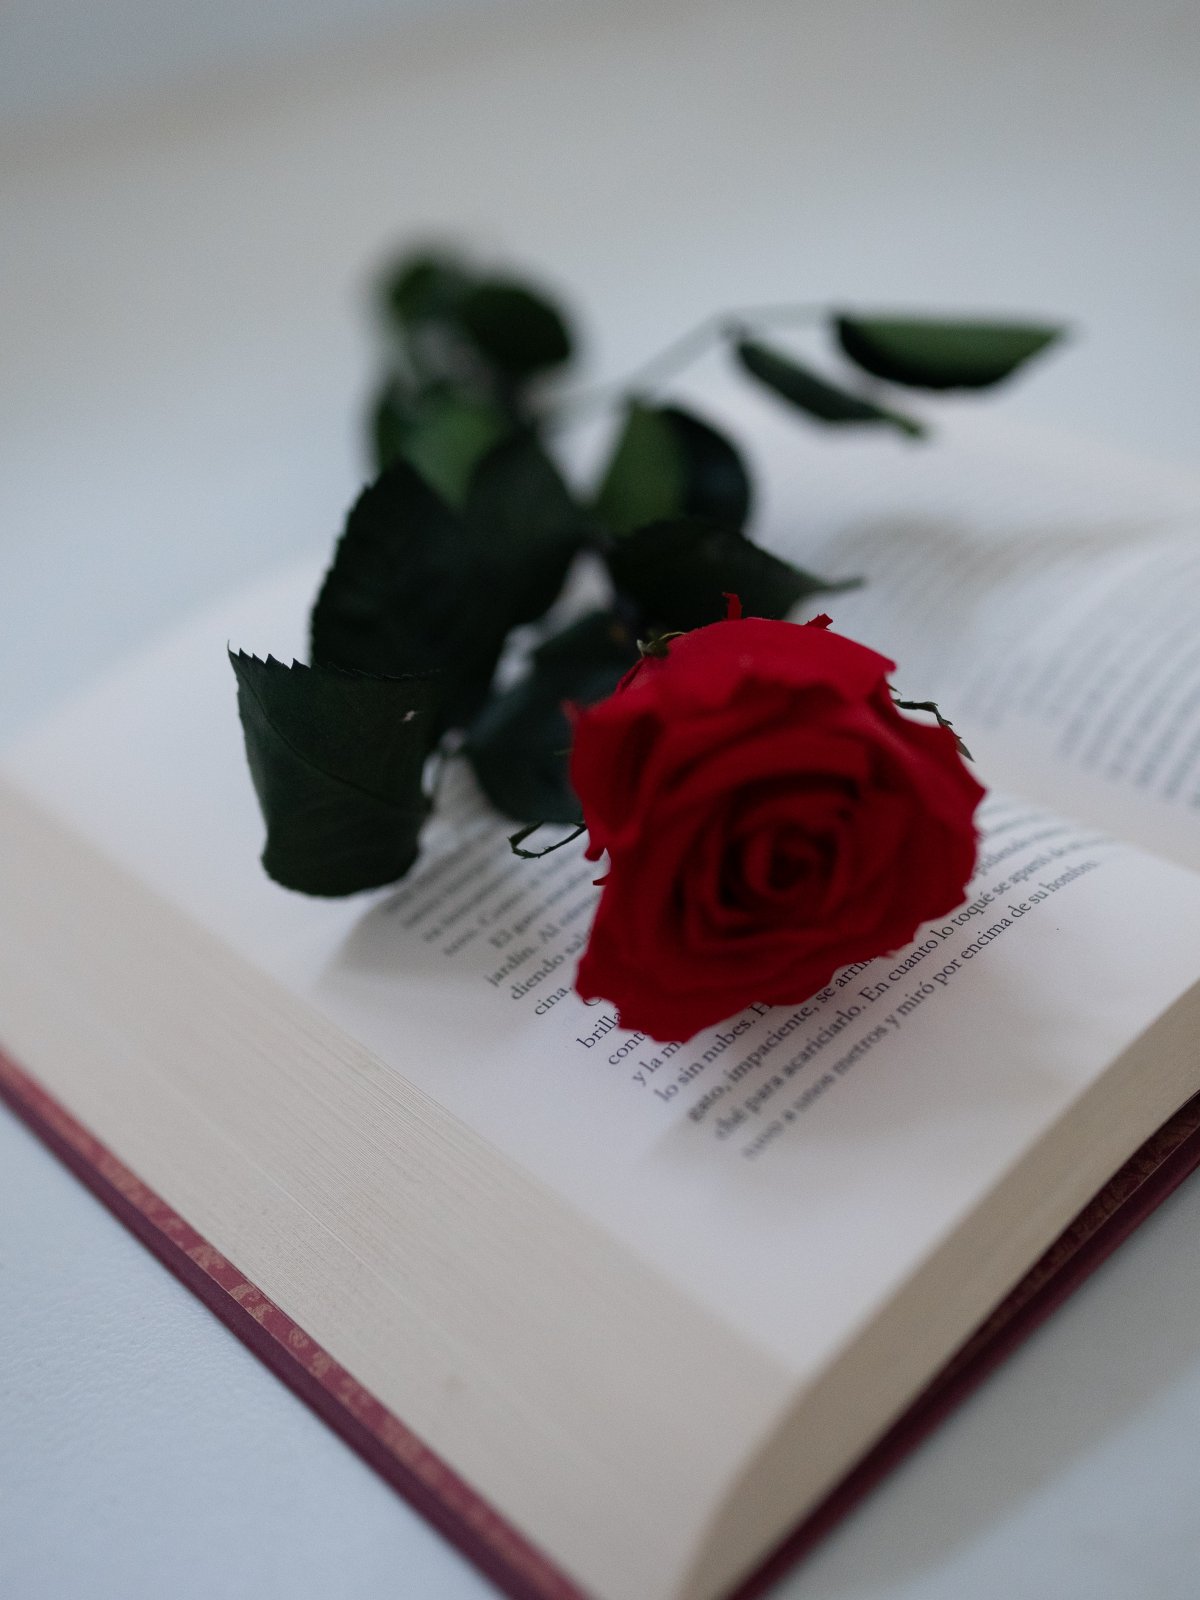 书与玫瑰花 图片唯美图片